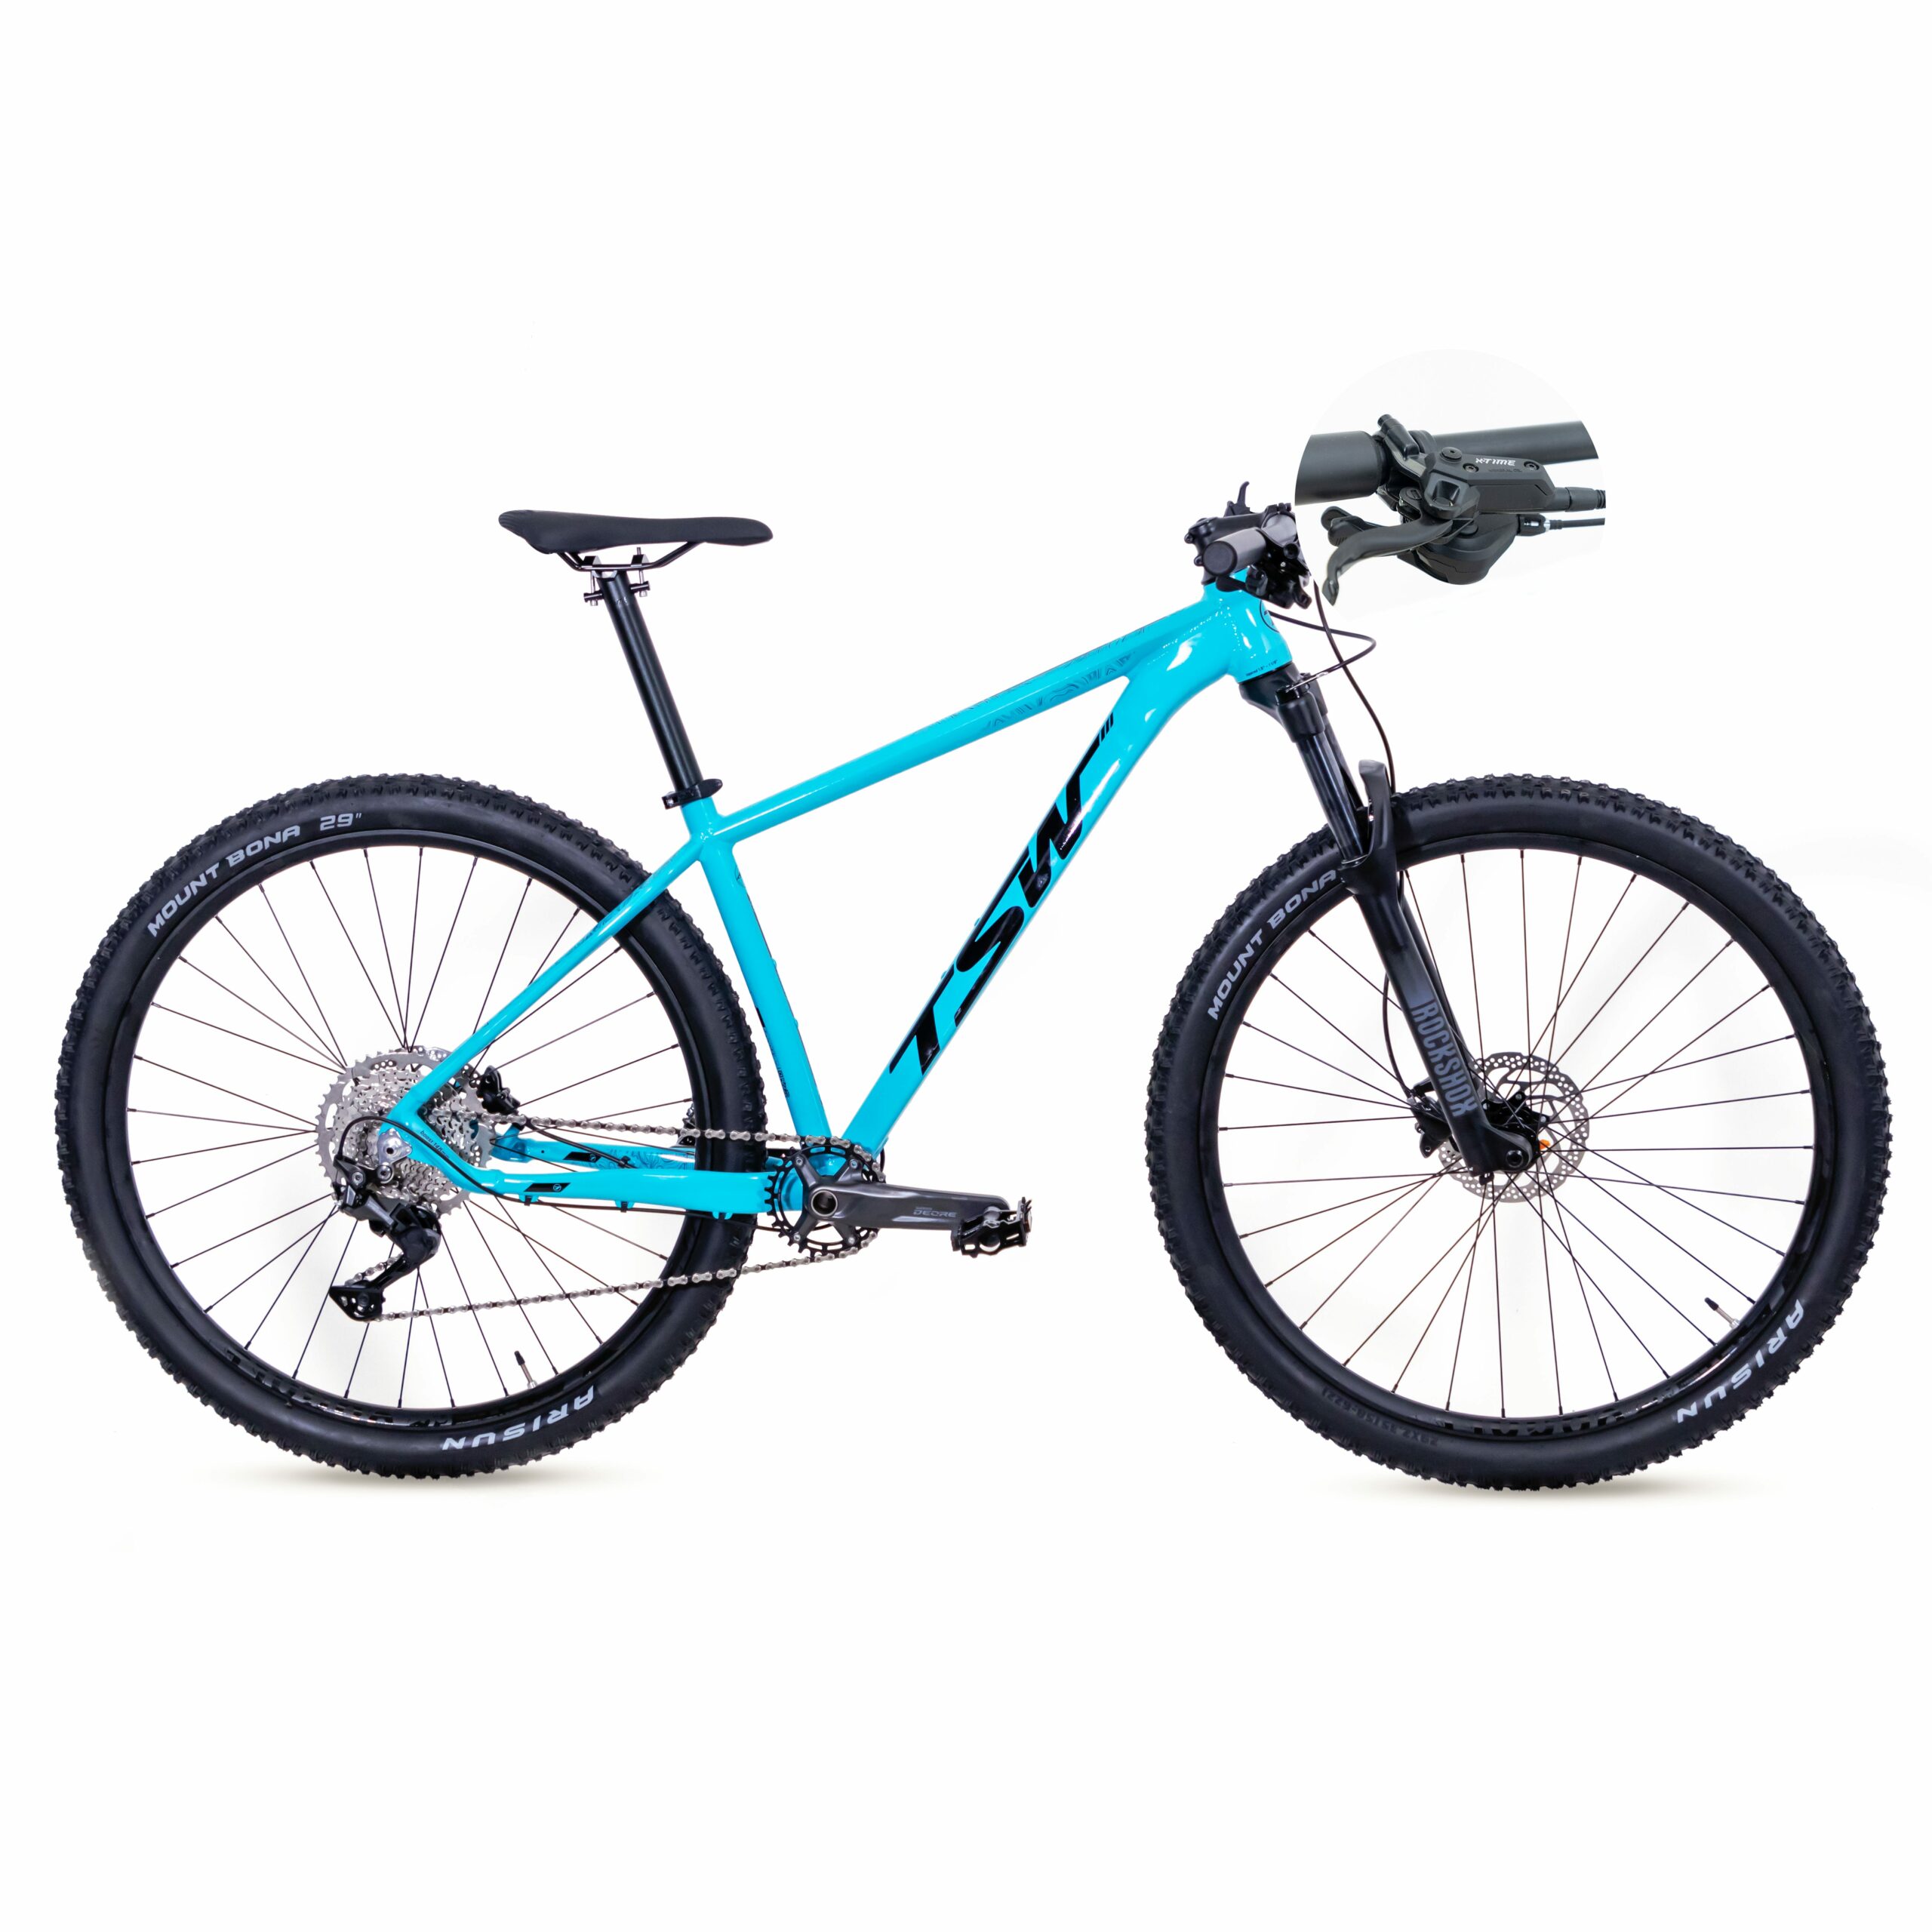 Bicicleta TSW Yukon - Freio X-Time | SH-10 | 2021/2022 - 17.5", Azul/Preto